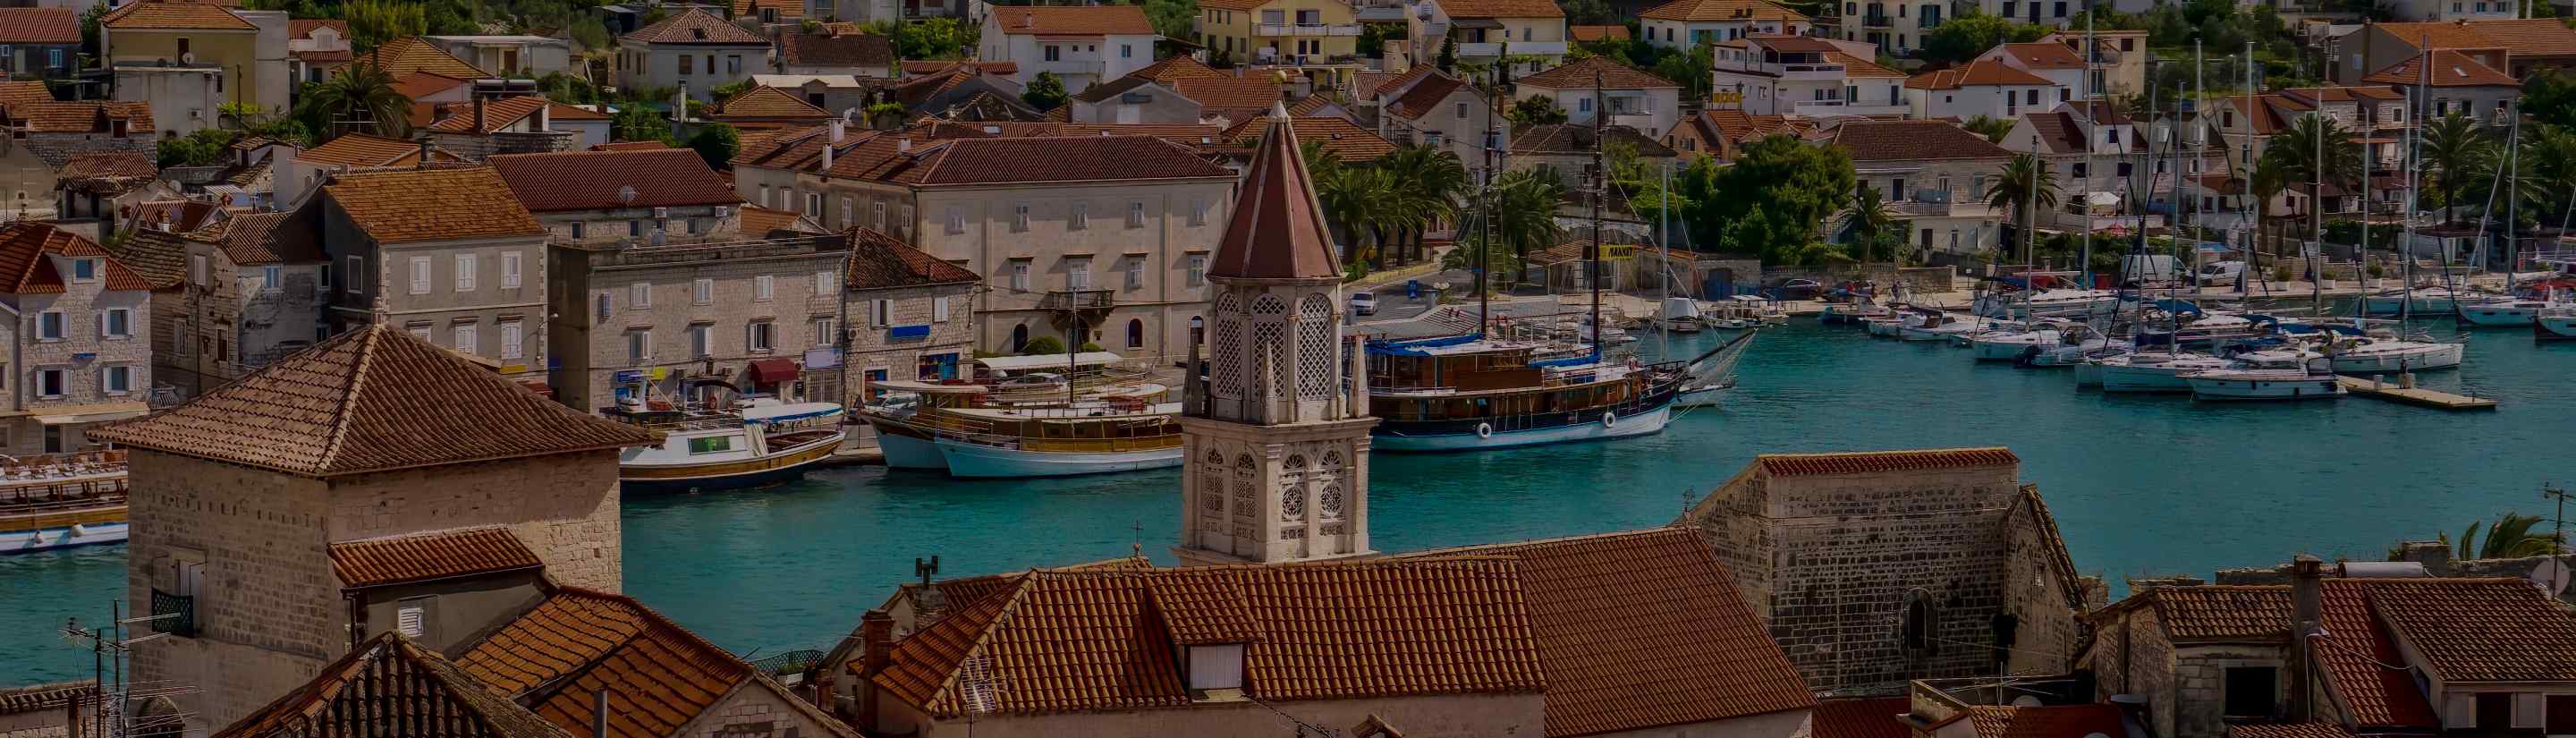 Altstadt von Trogir in Kroatien